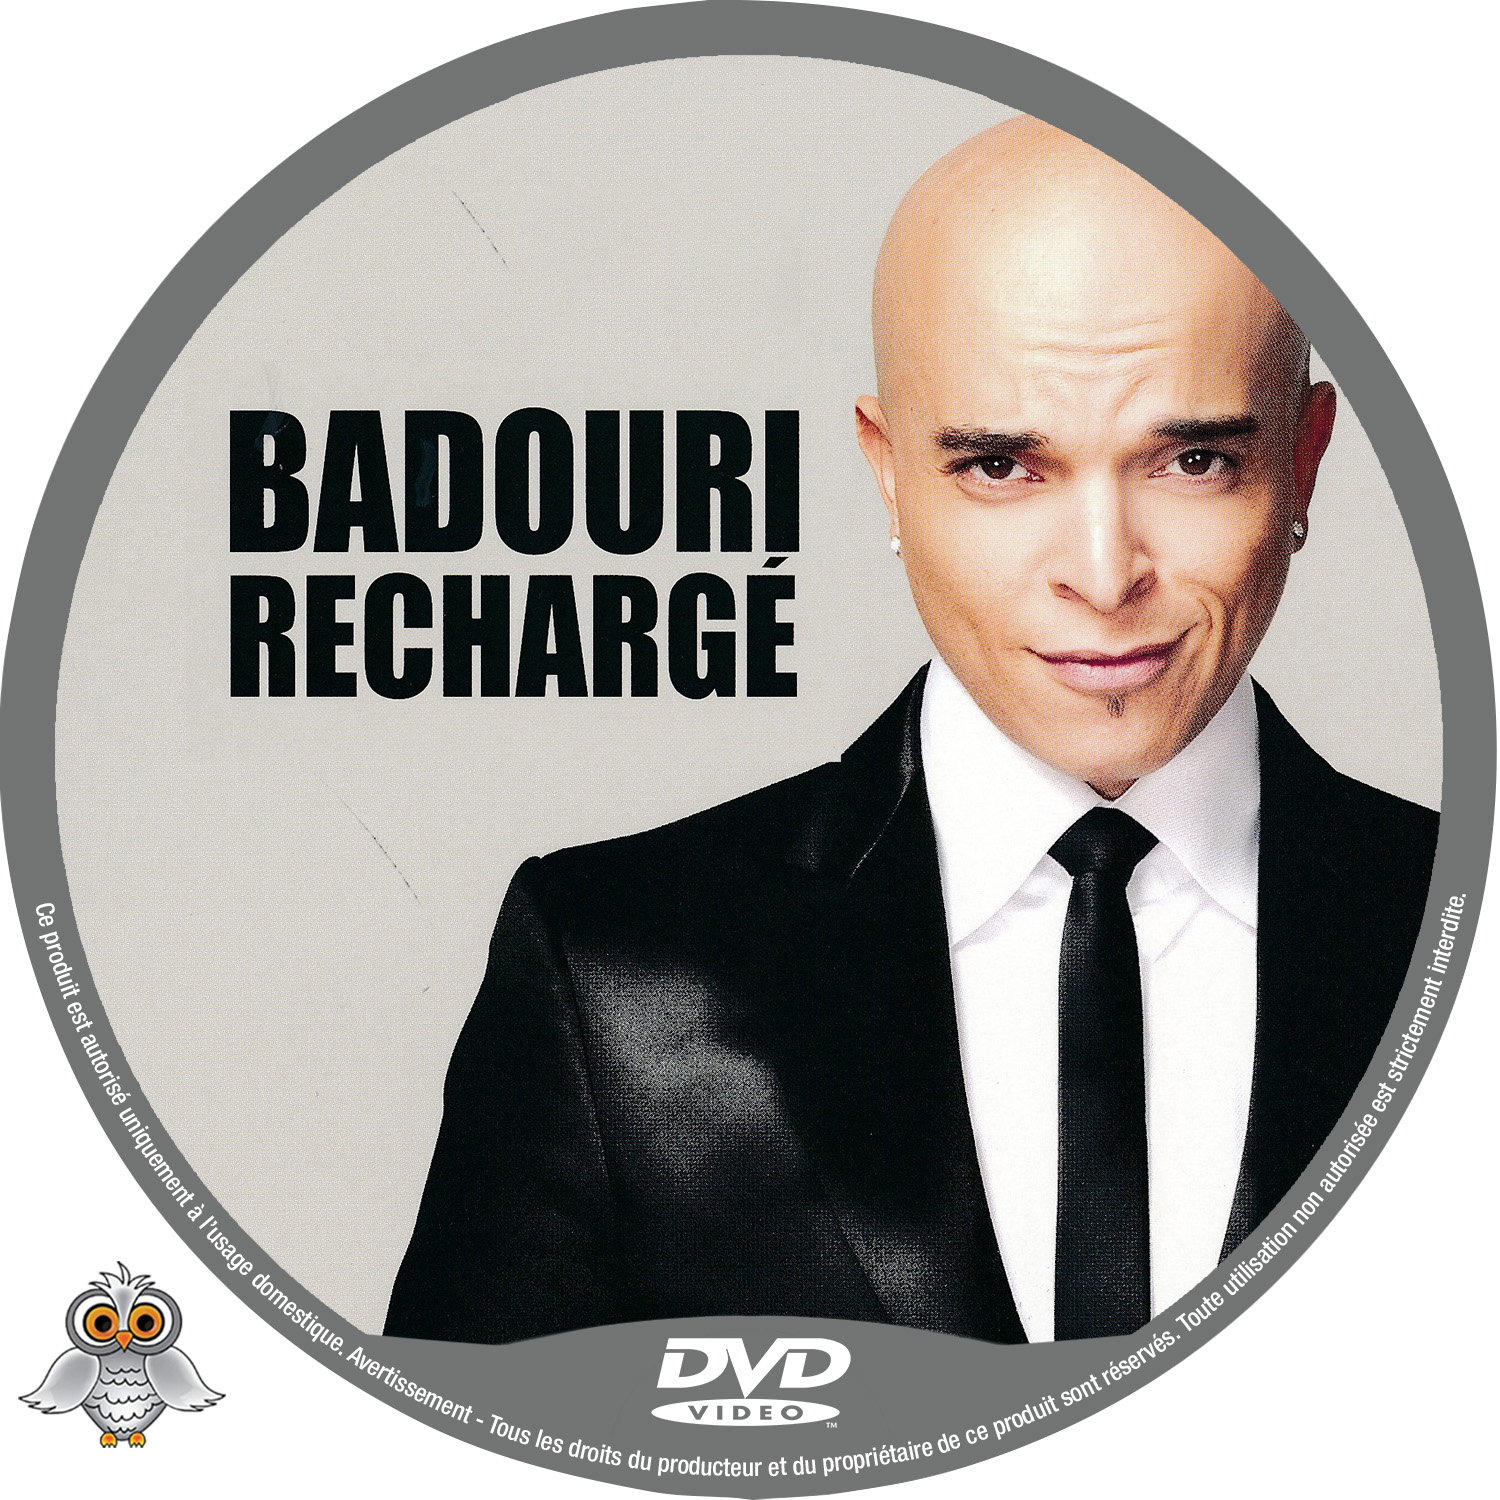 Badouri Recharge custom